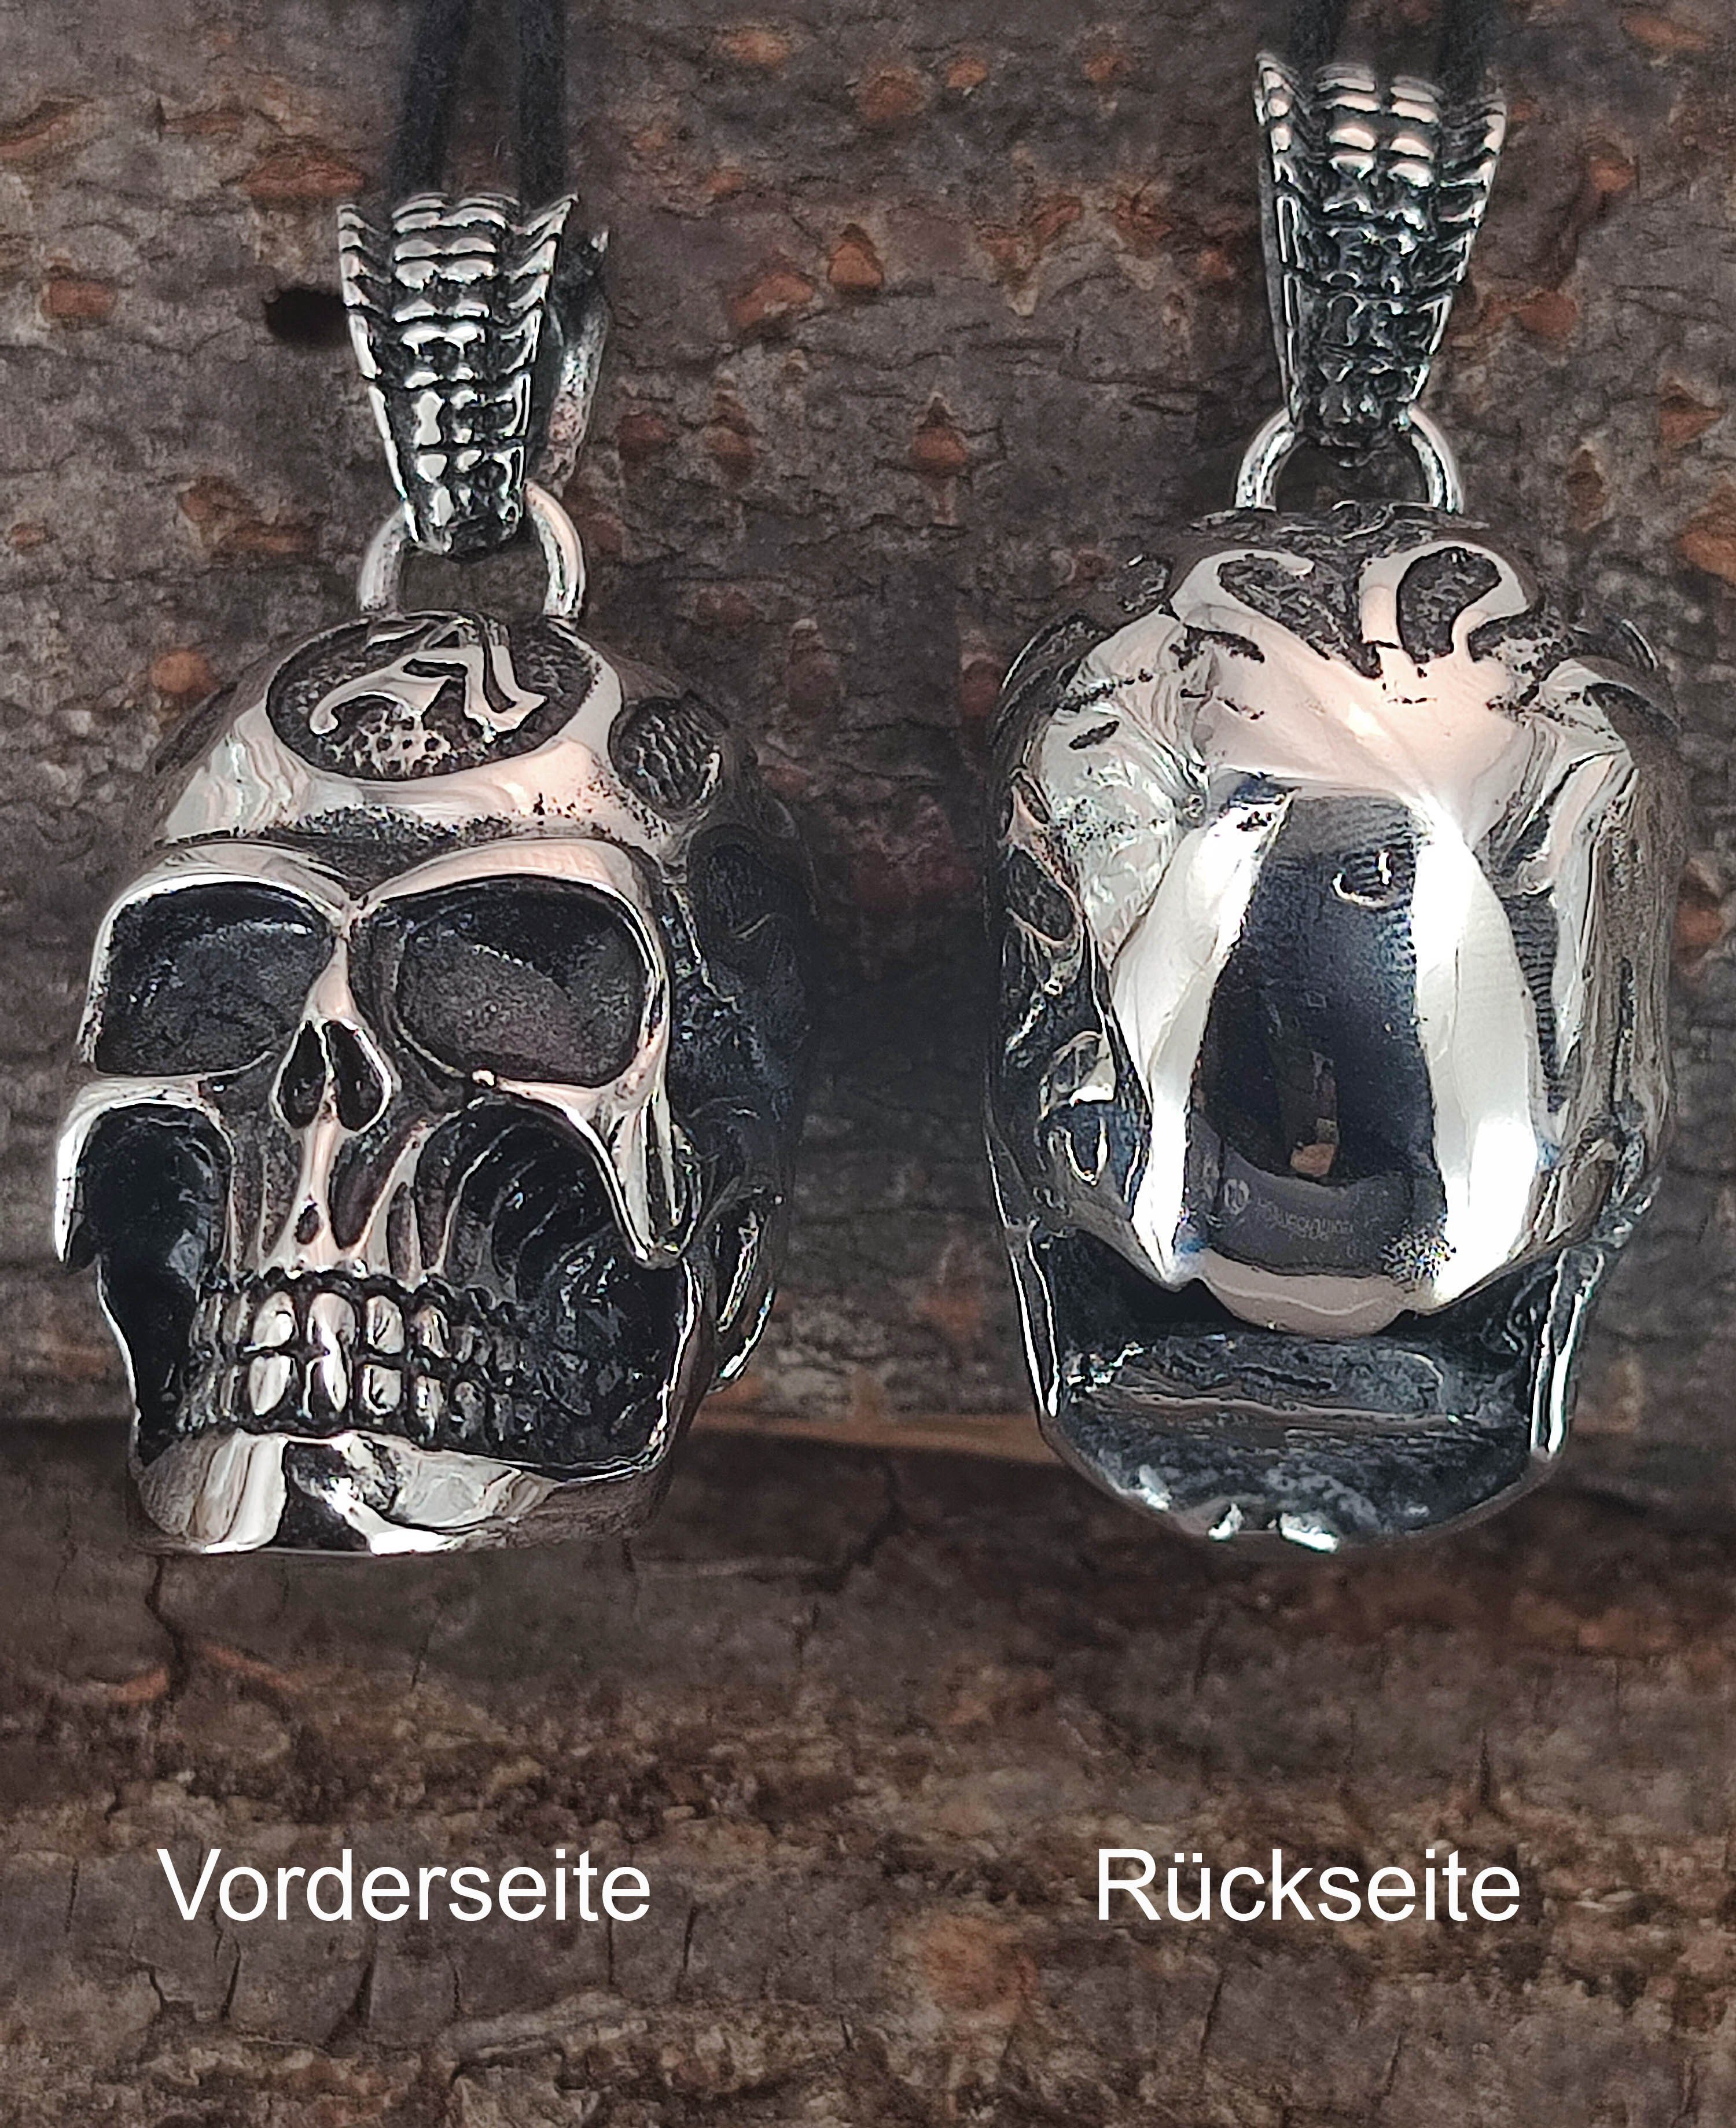 of Edelstahl großer Schädel Totenkopf Leather Kettenanhänger dreidimensional Skull Kiss Anhänger